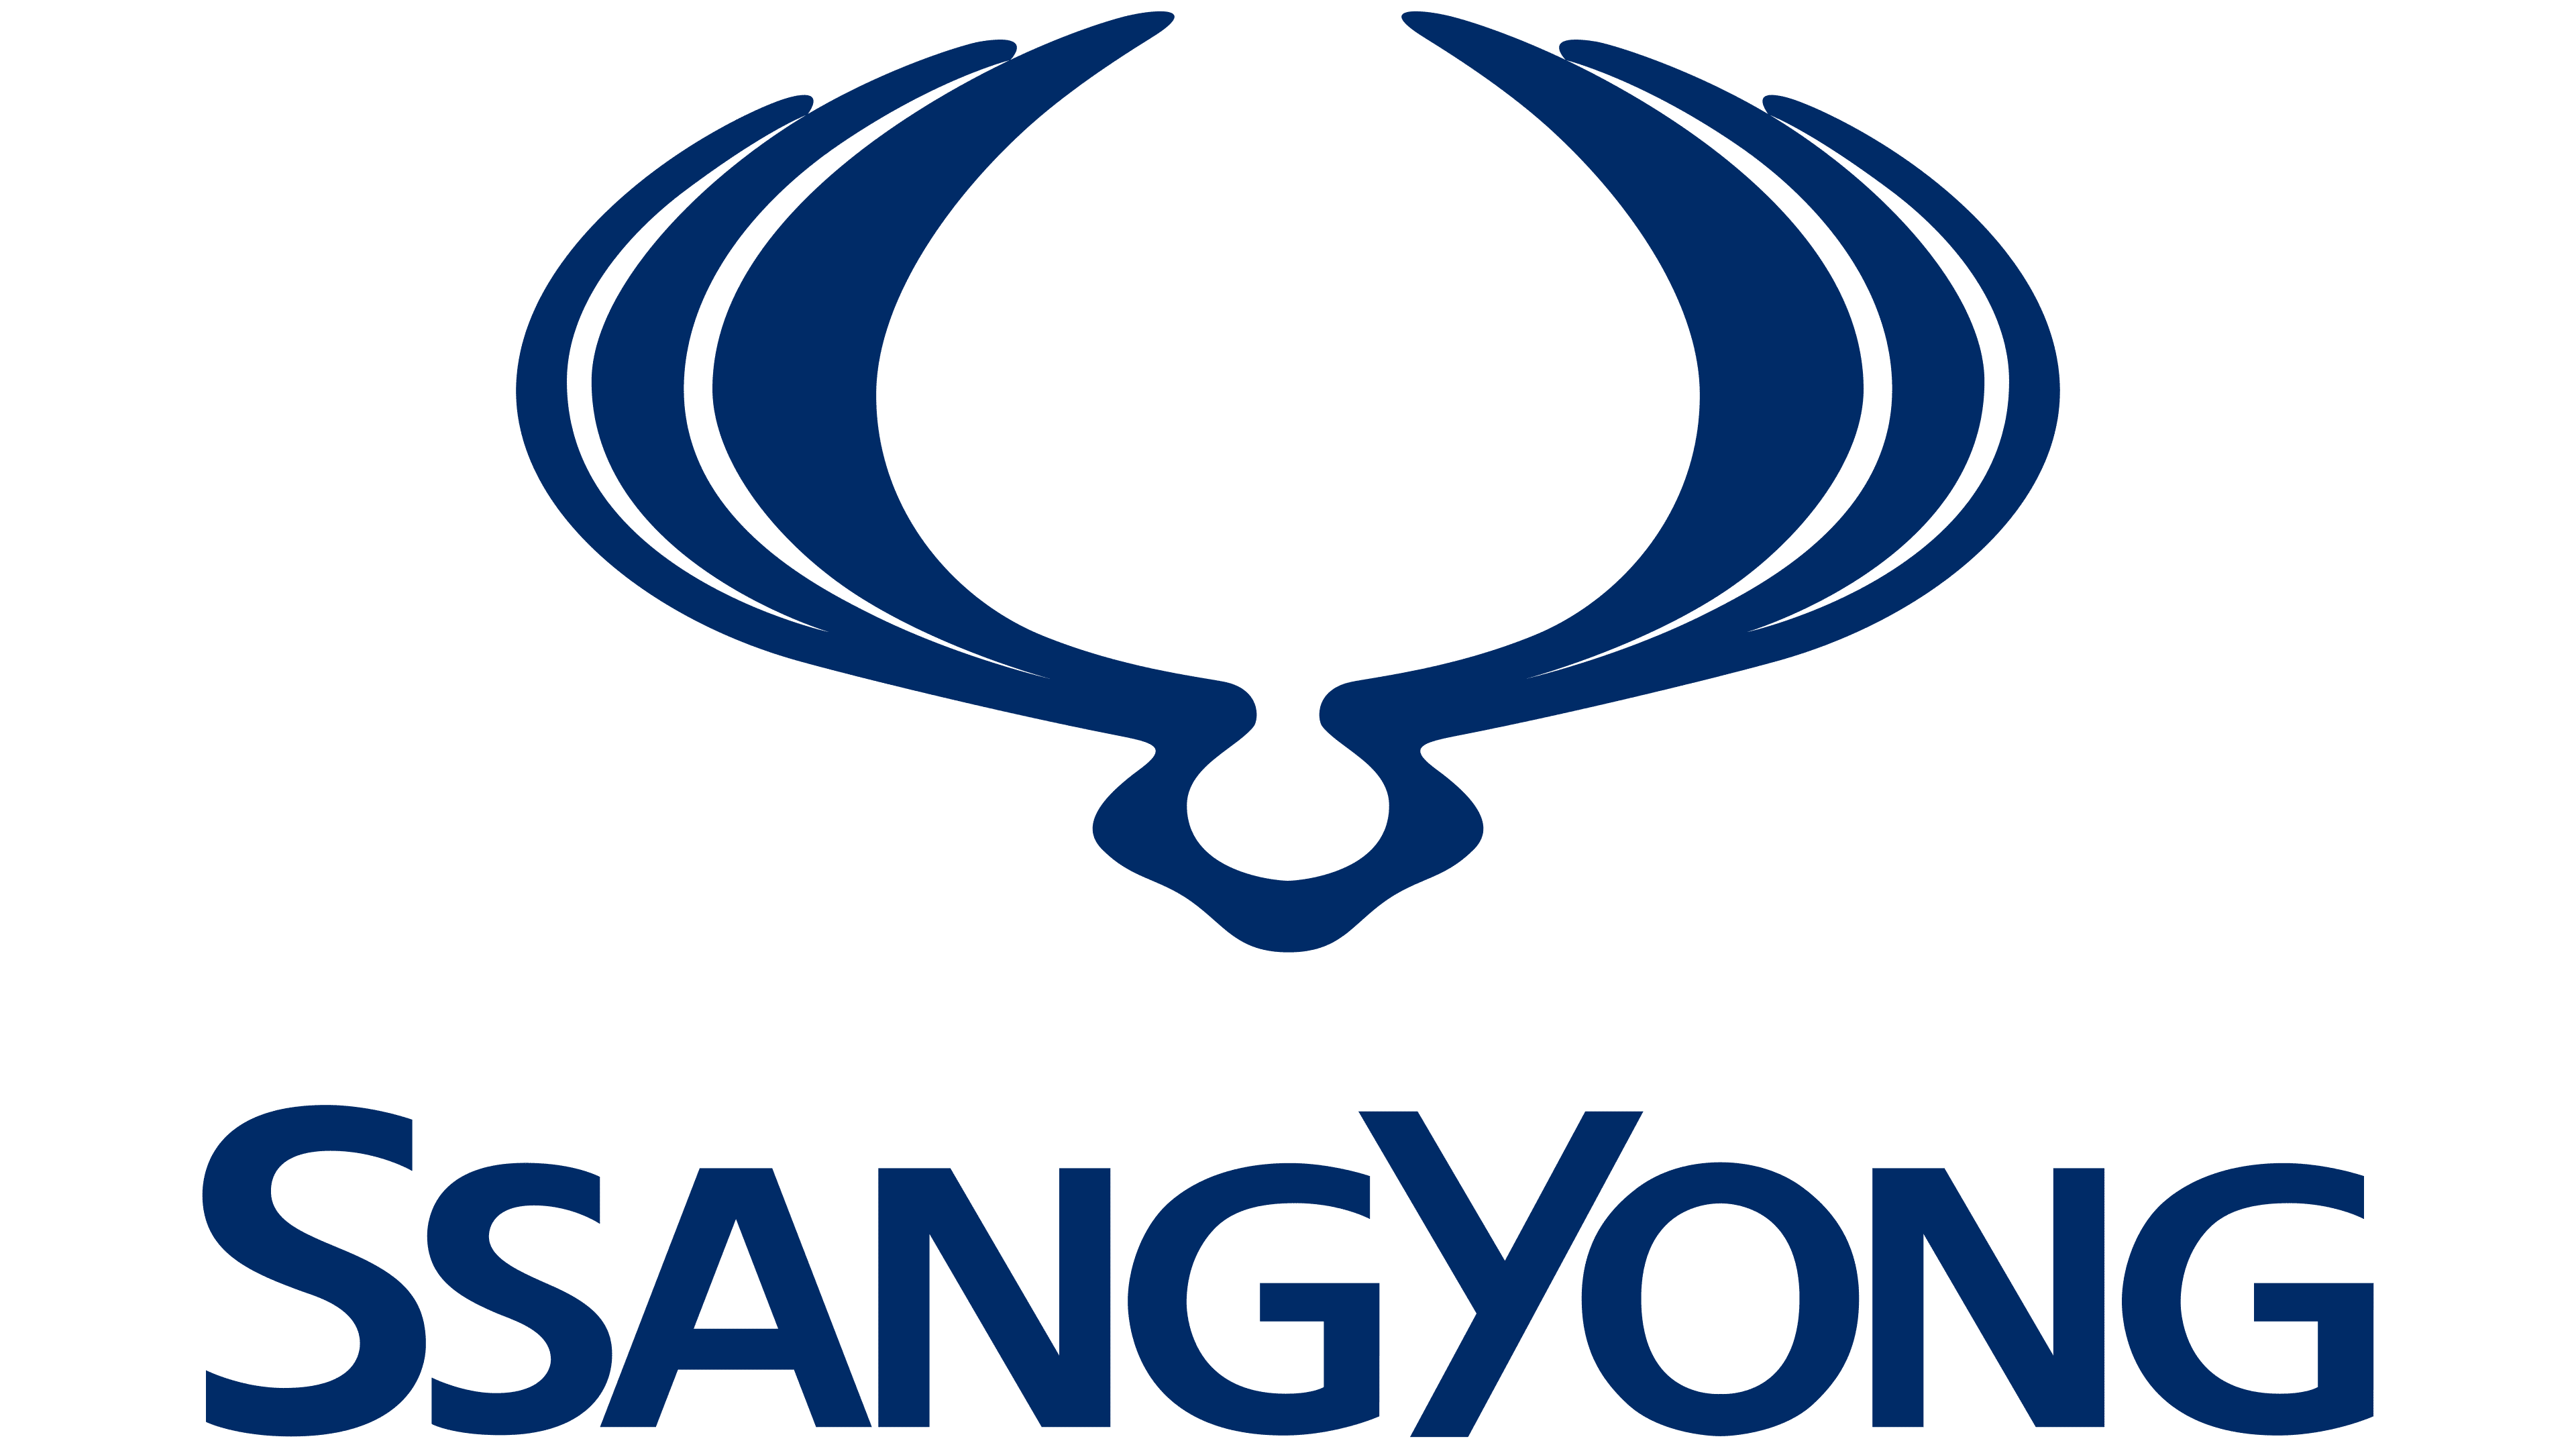 Ssangyong_logo